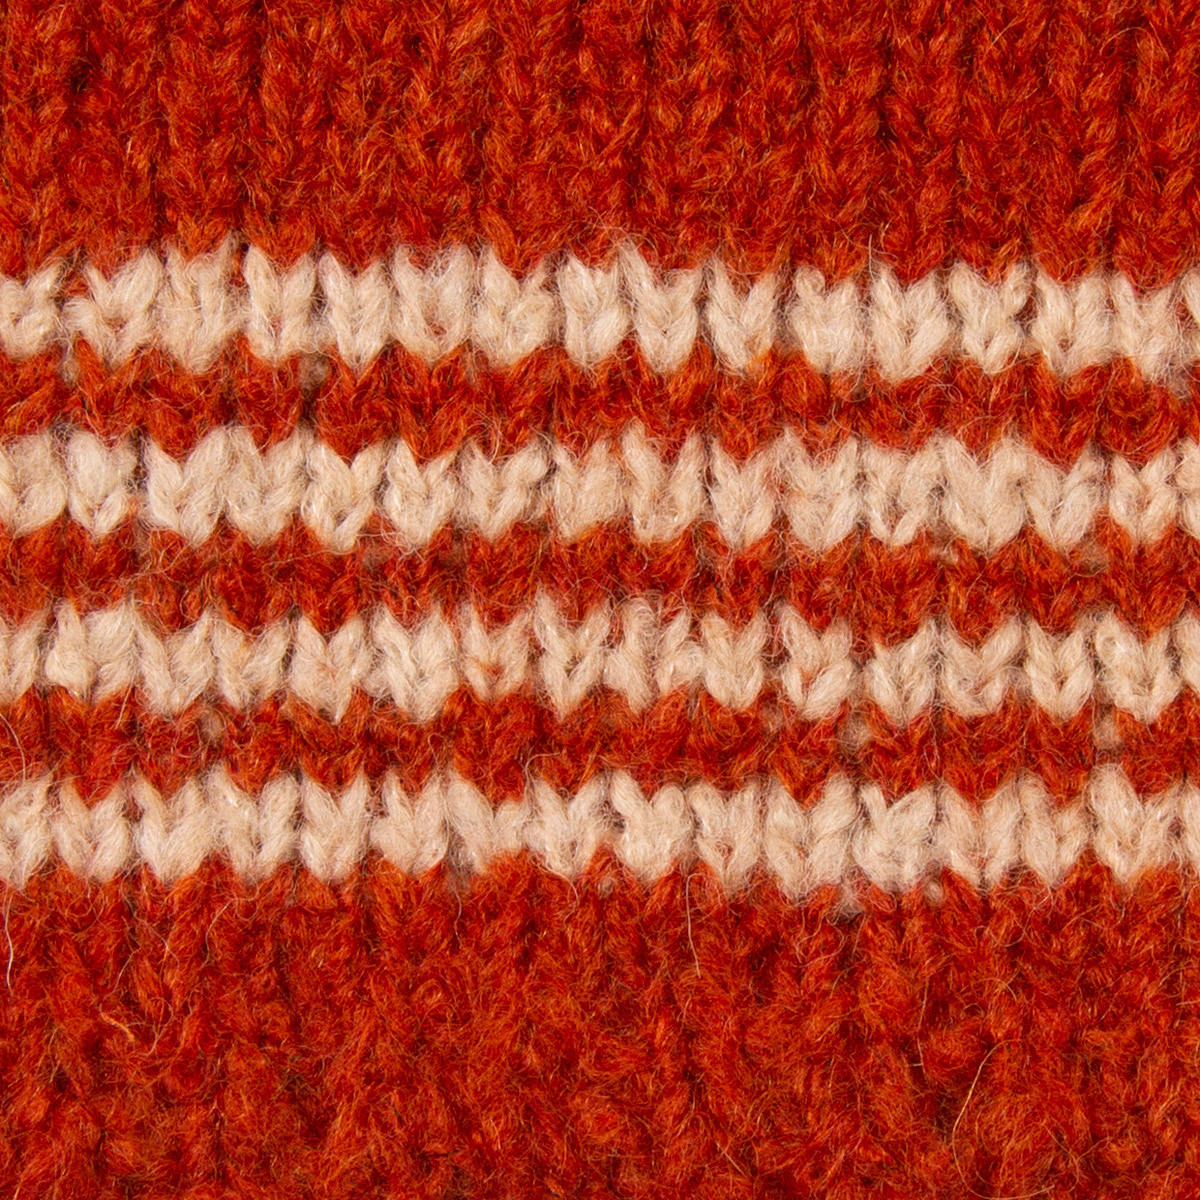 Elm Jumper in knitting kit